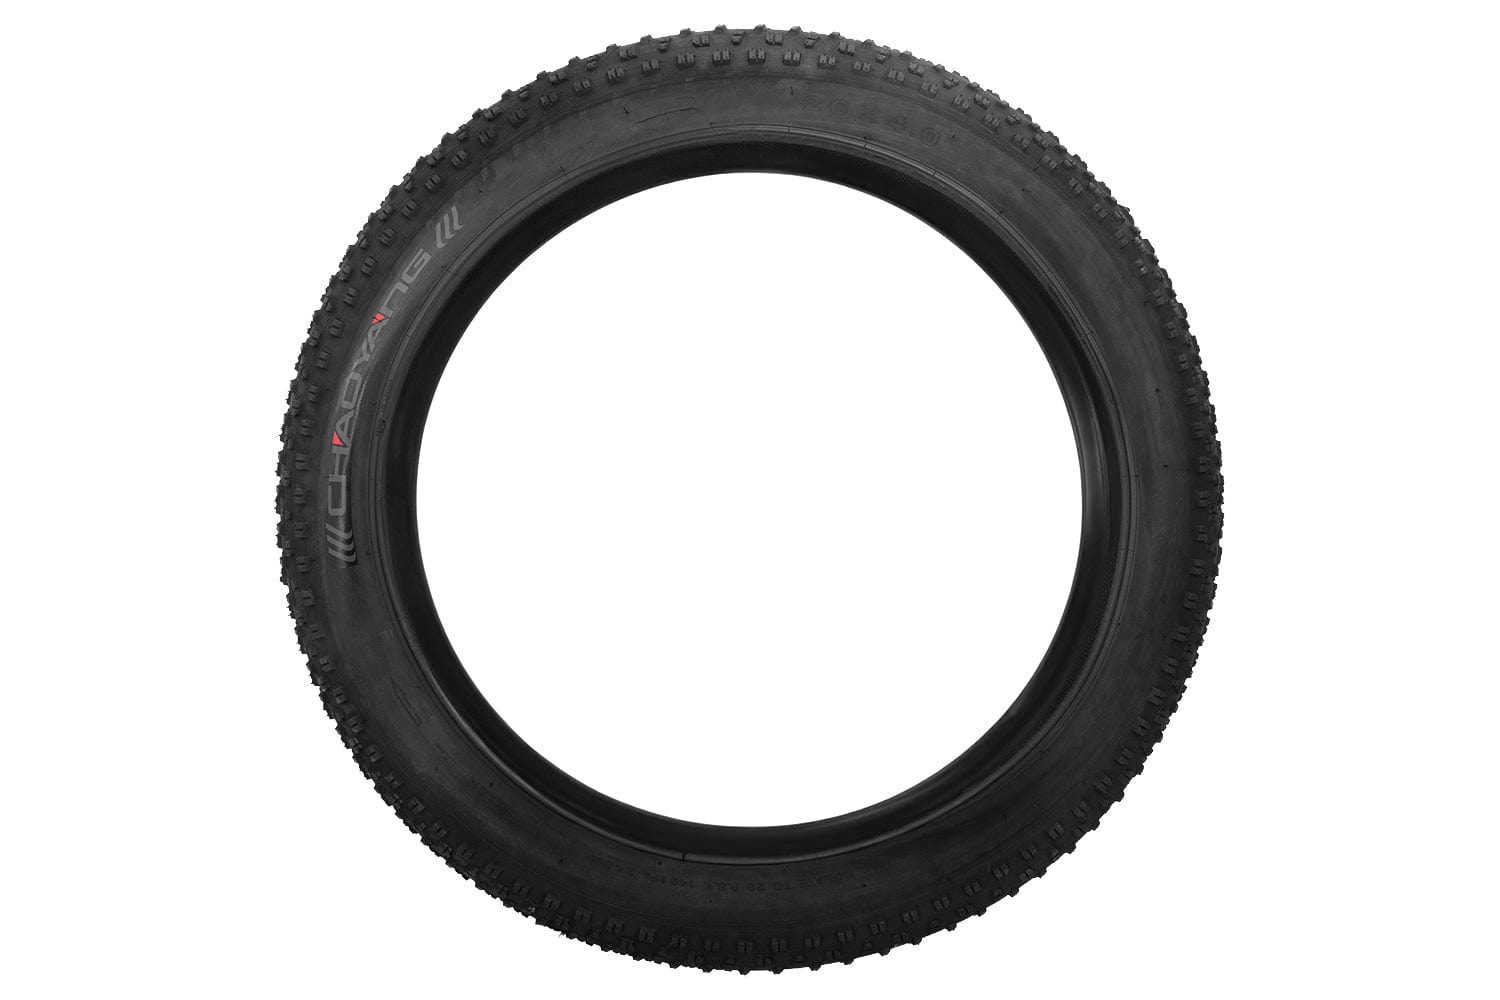 Emmo Wheels & Tires 26x4.0 Tubed Tire 26 x 4.0 BIKE TIRE